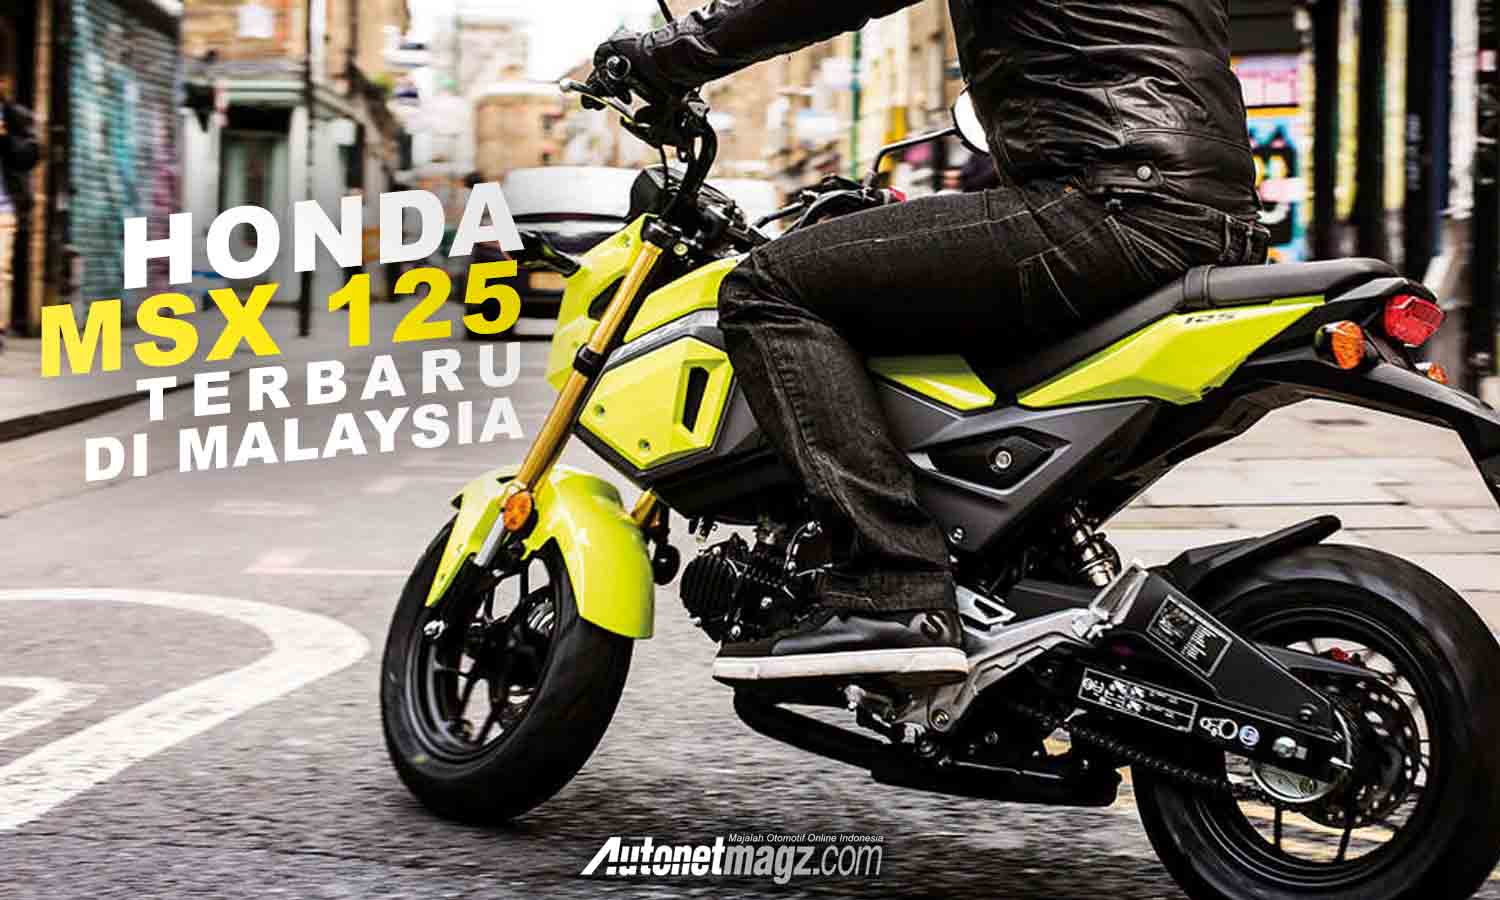 Honda MSX 125 Terbaru Dirilis Di Malaysia AutonetMagz